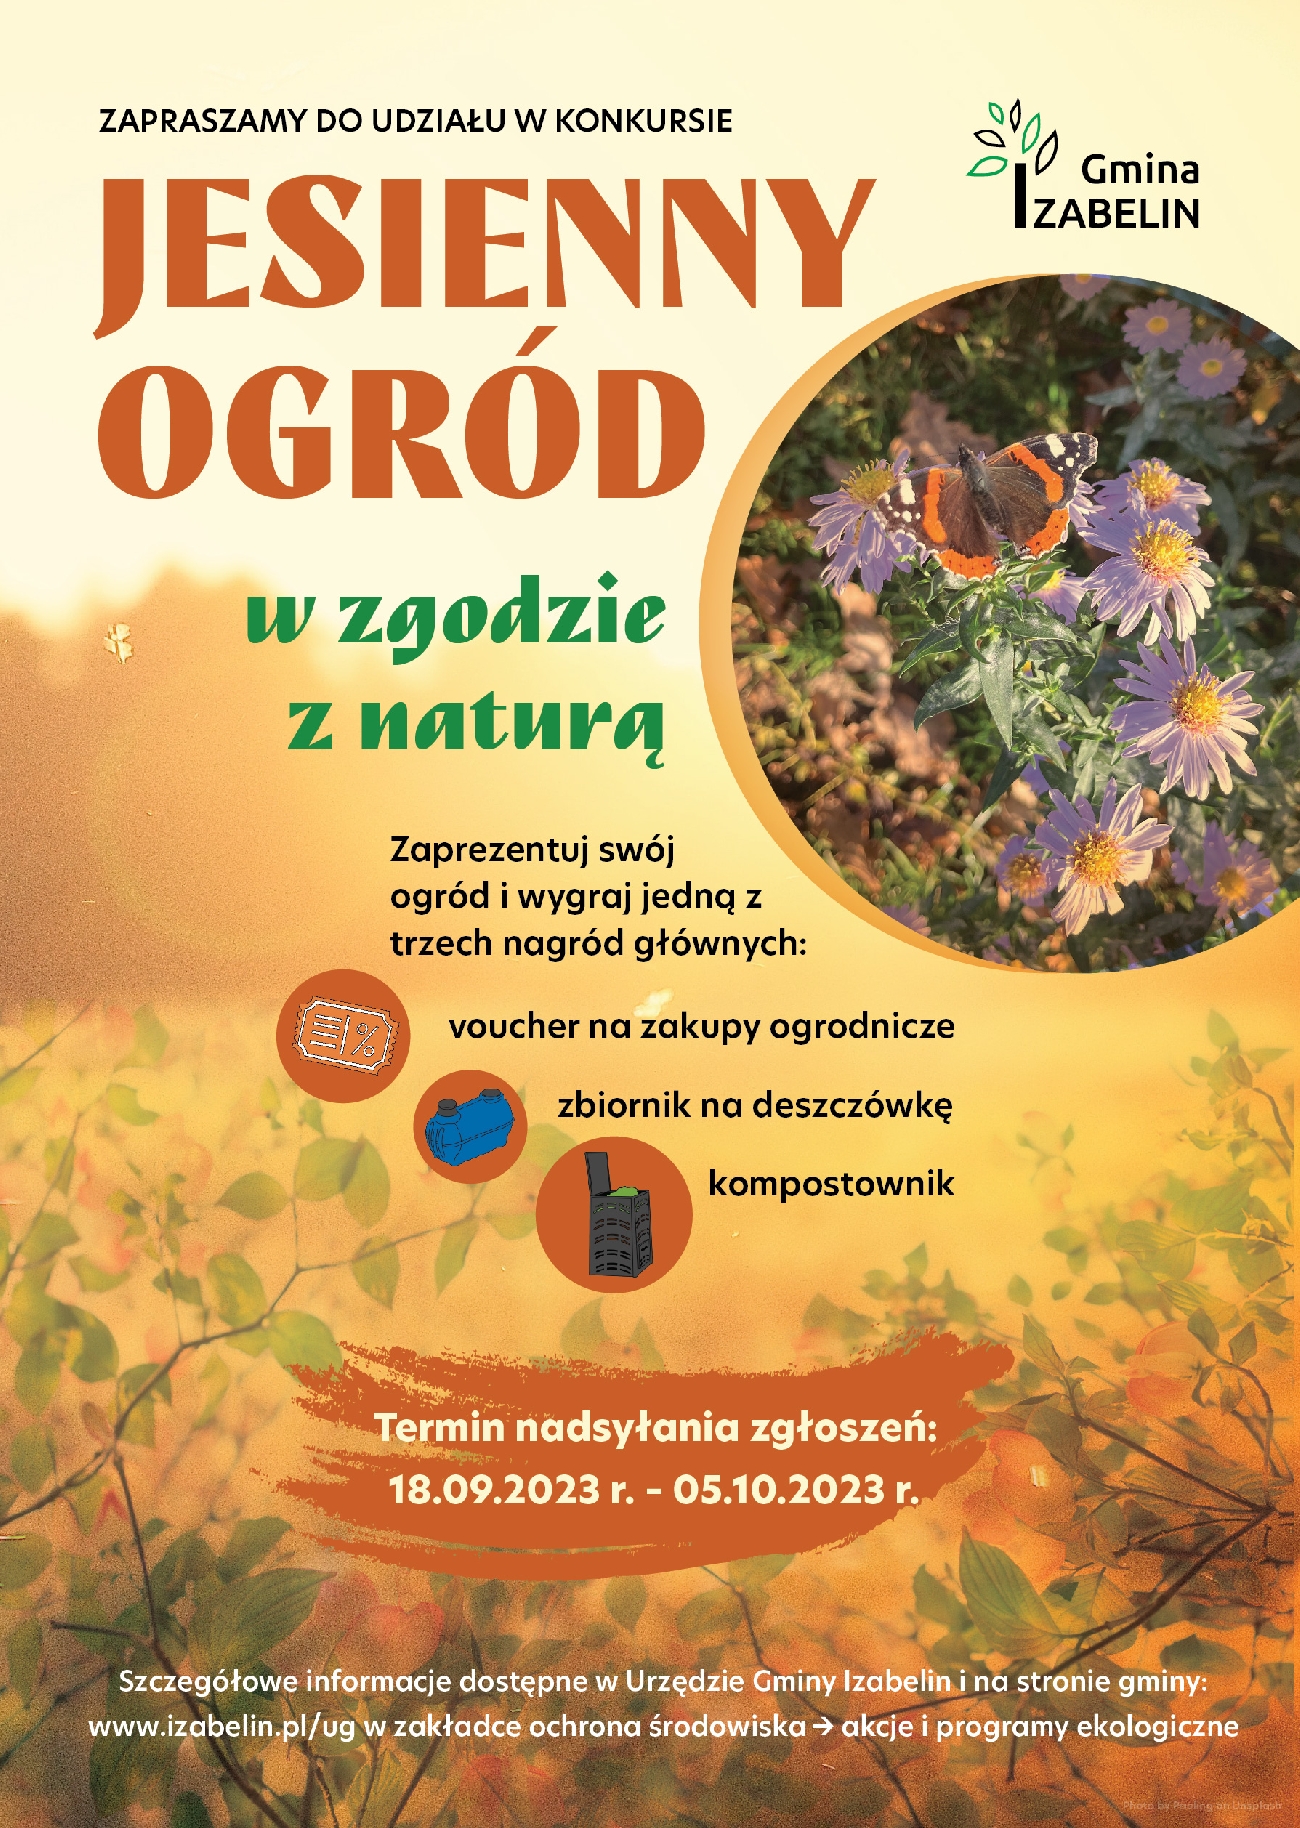 Plakat informacyjny o konkursie - Jesienny ogród w zgodzie z naturą   